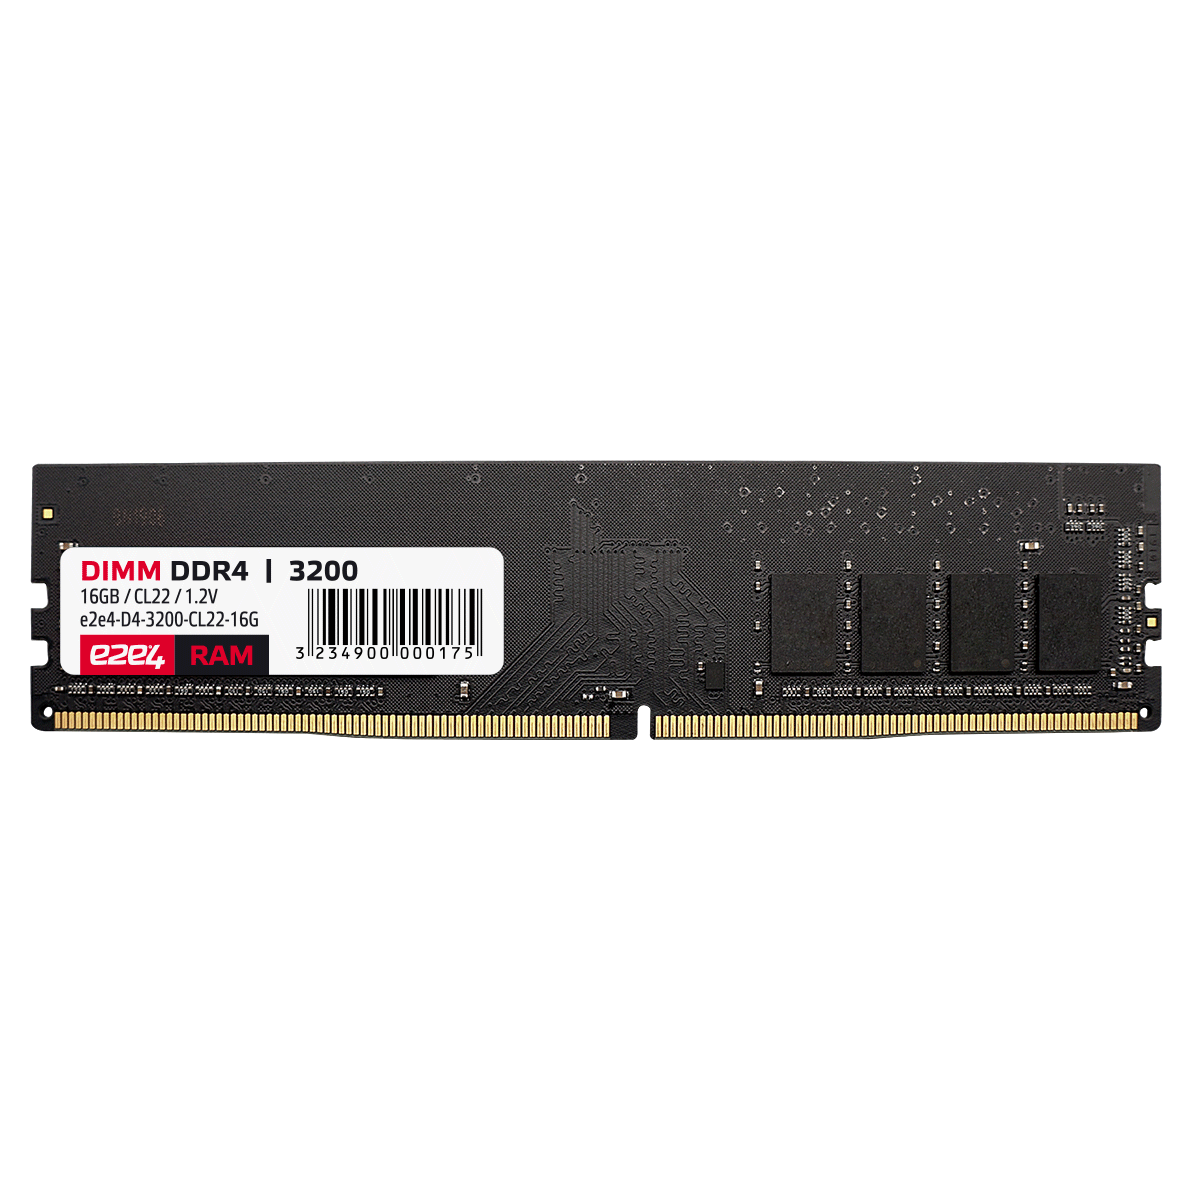 Память DDR4 DIMM 16Gb, 3200MHz, CL22, 1.2V e2e4 (D4-3200-CL22-16G) б/у, после ремонта, следы монтажа